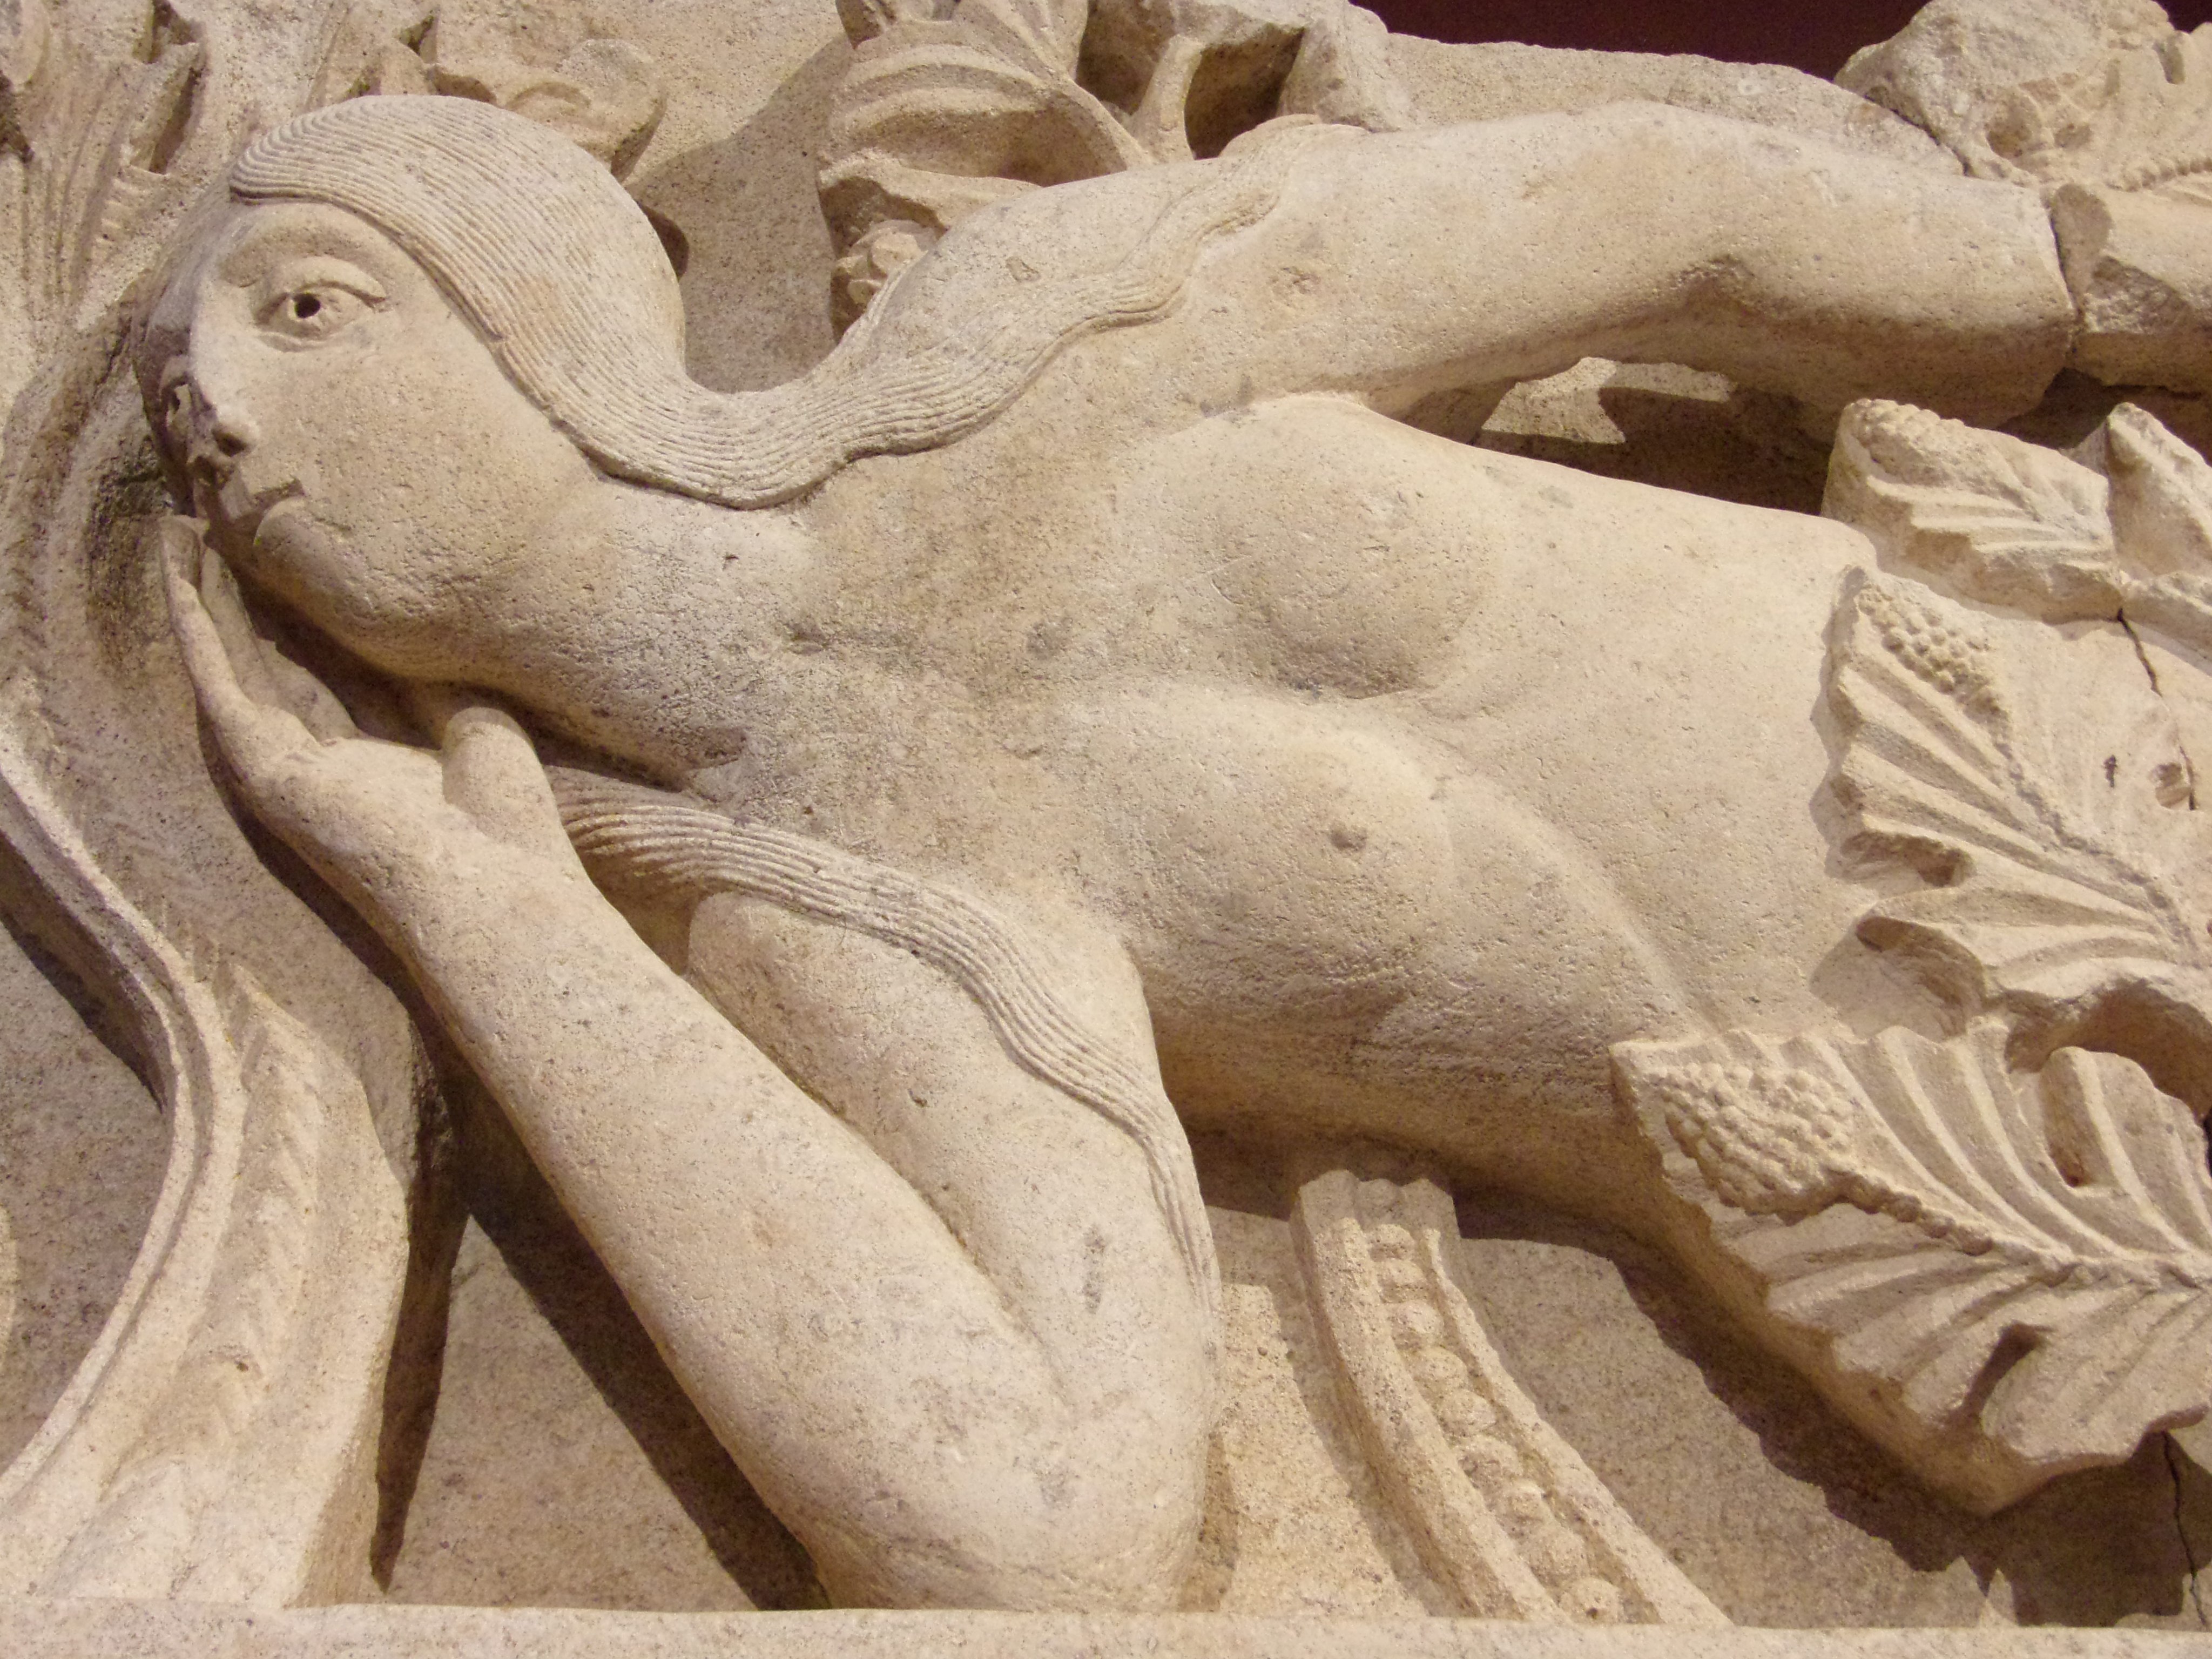 DDétail de la sculpture La tentation d'Ève relief sculpté attribué à Gislebertus, vers 1130